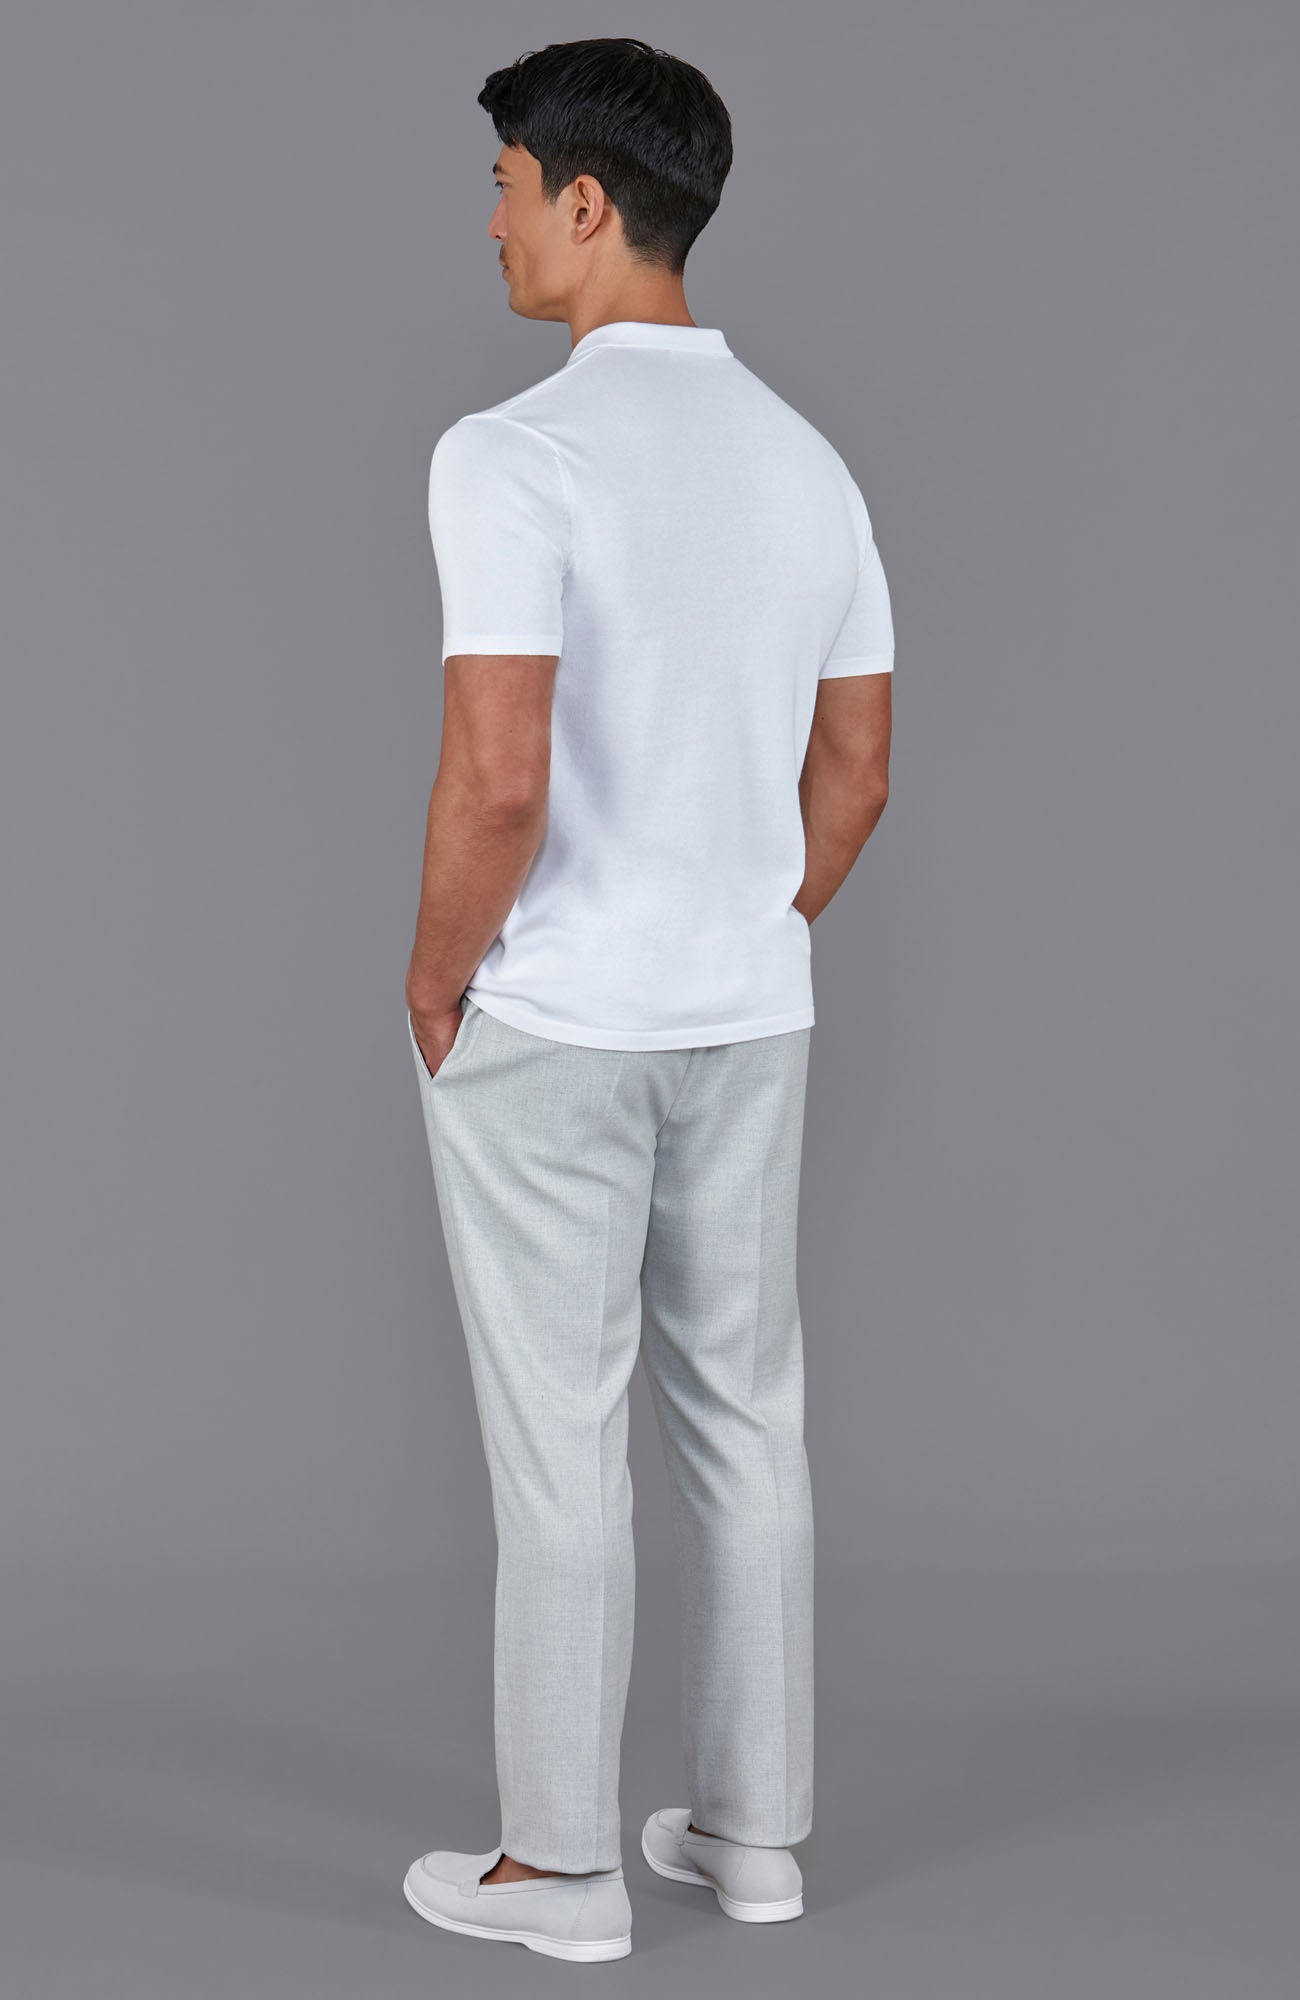 white mens knitted short sleeve shirt